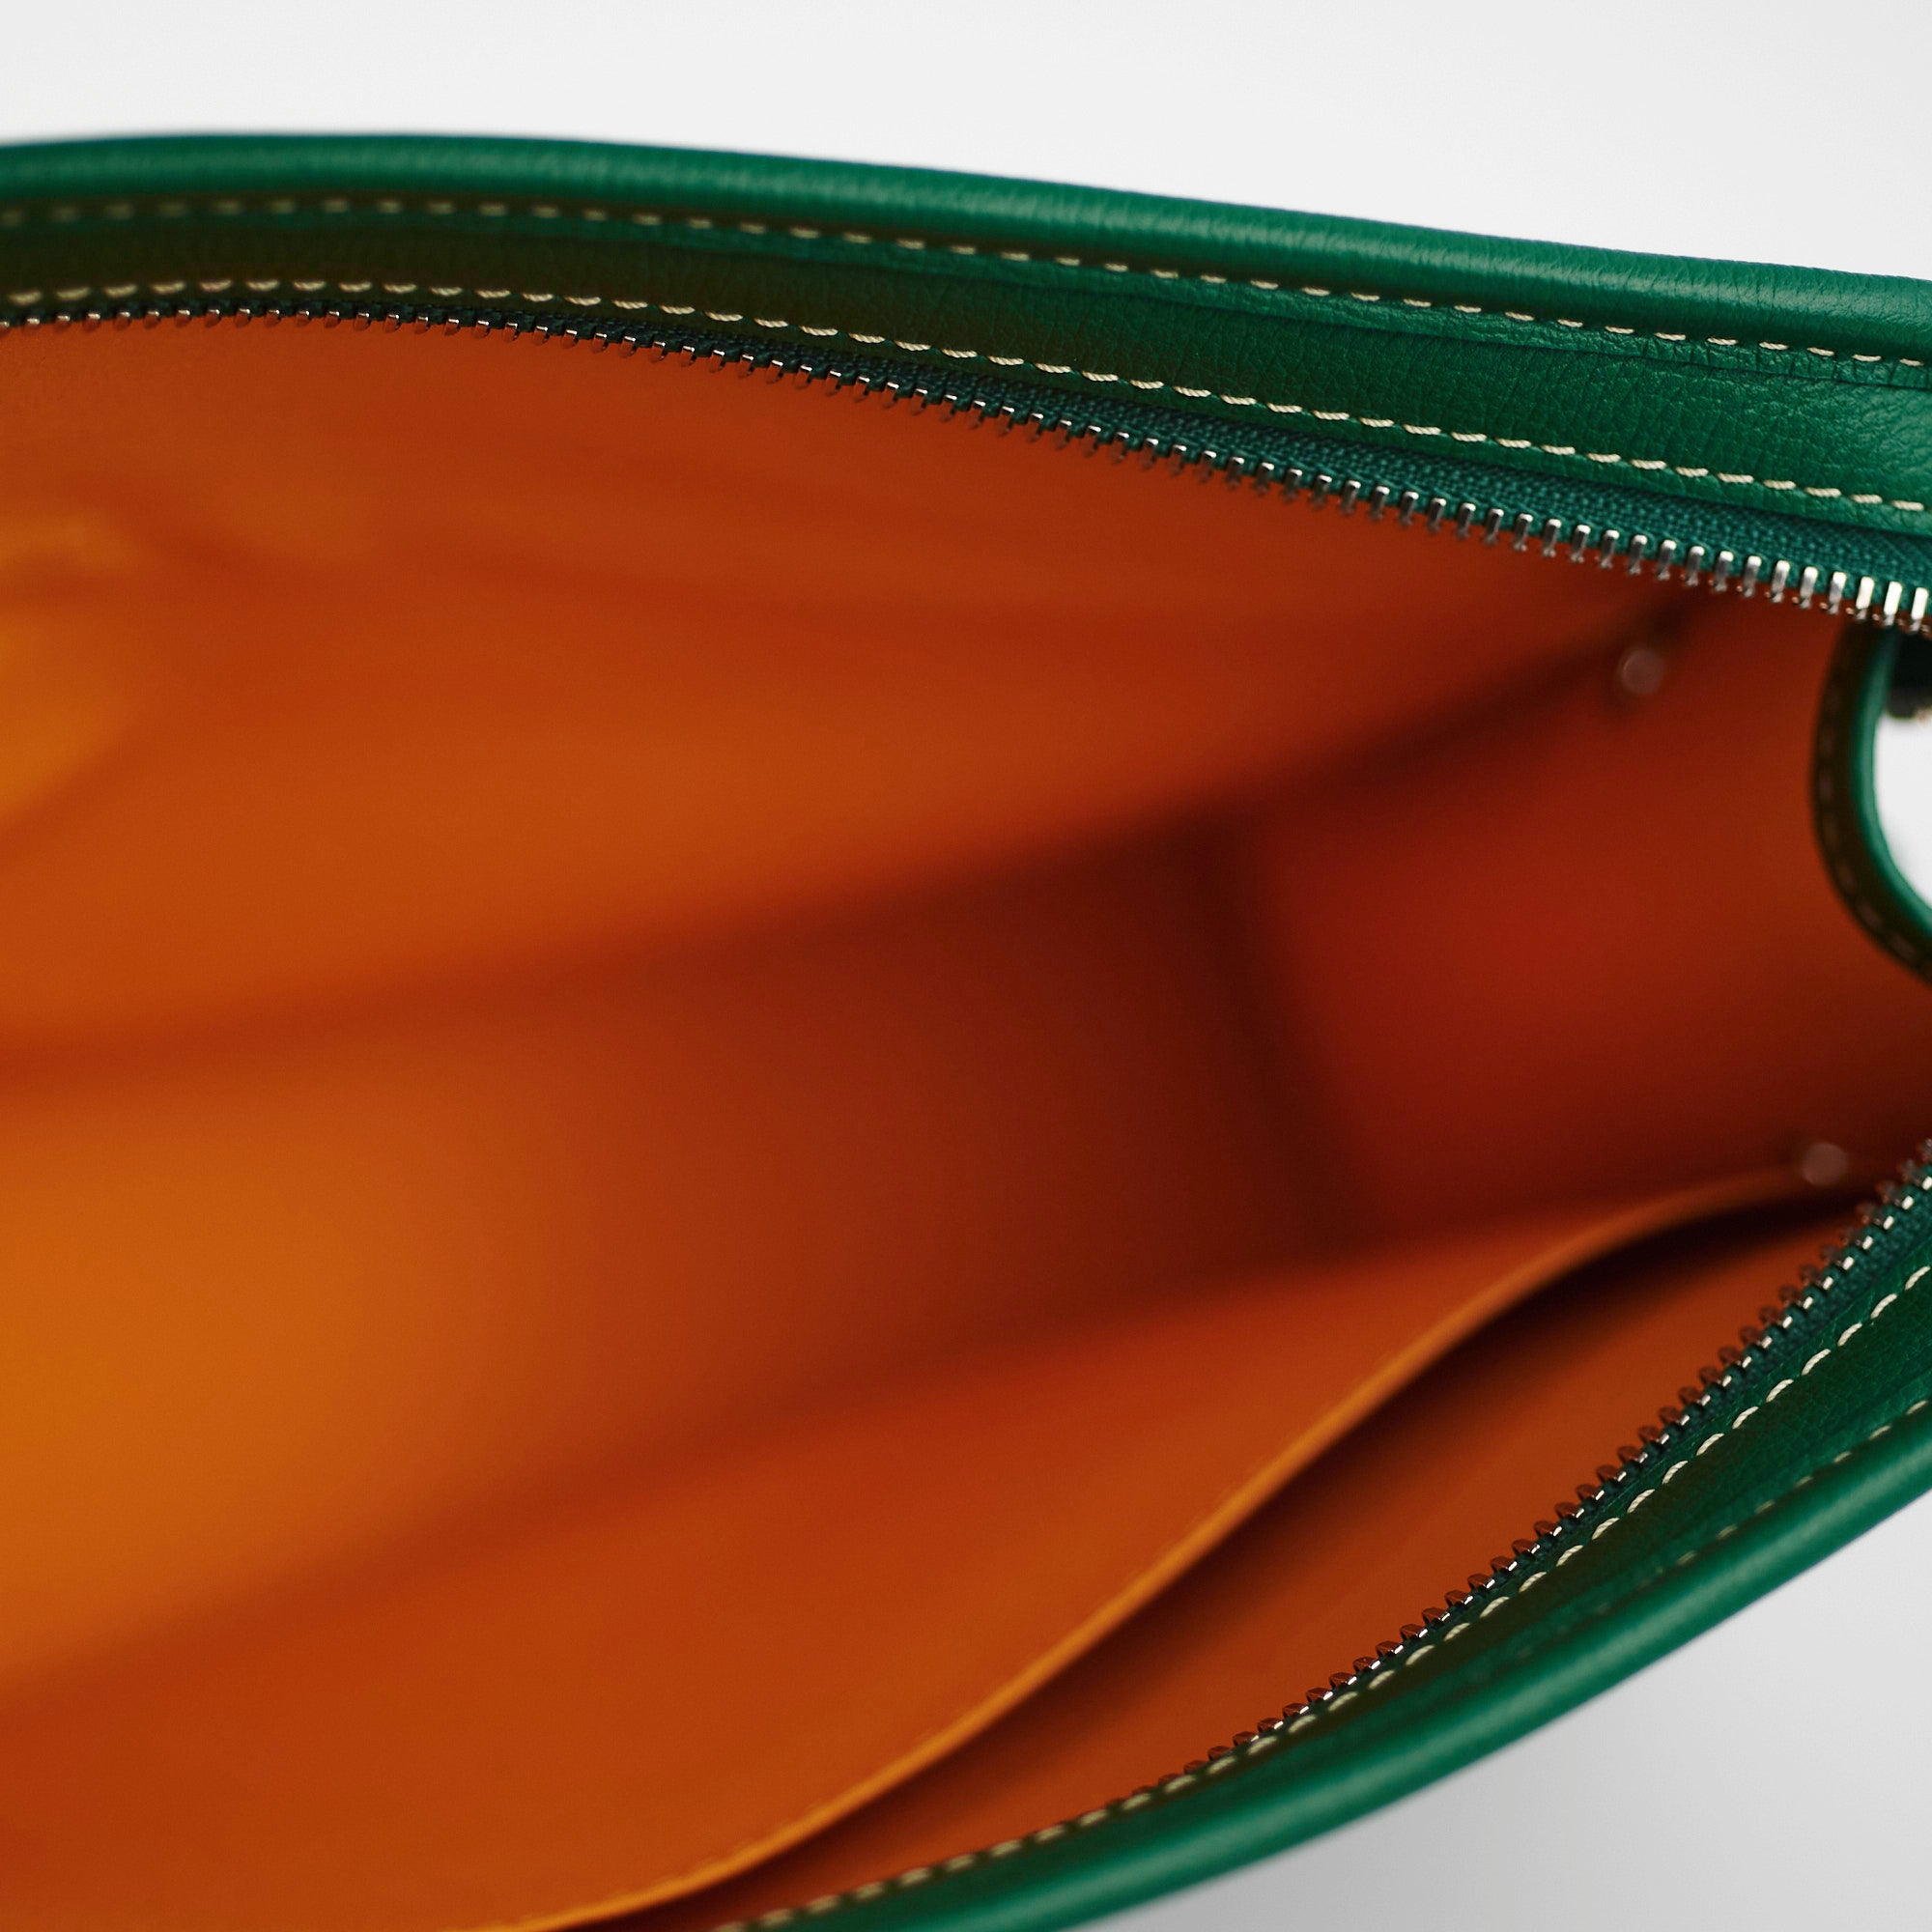 Jouvence cloth clutch bag Goyard Green in Cloth - 34825239